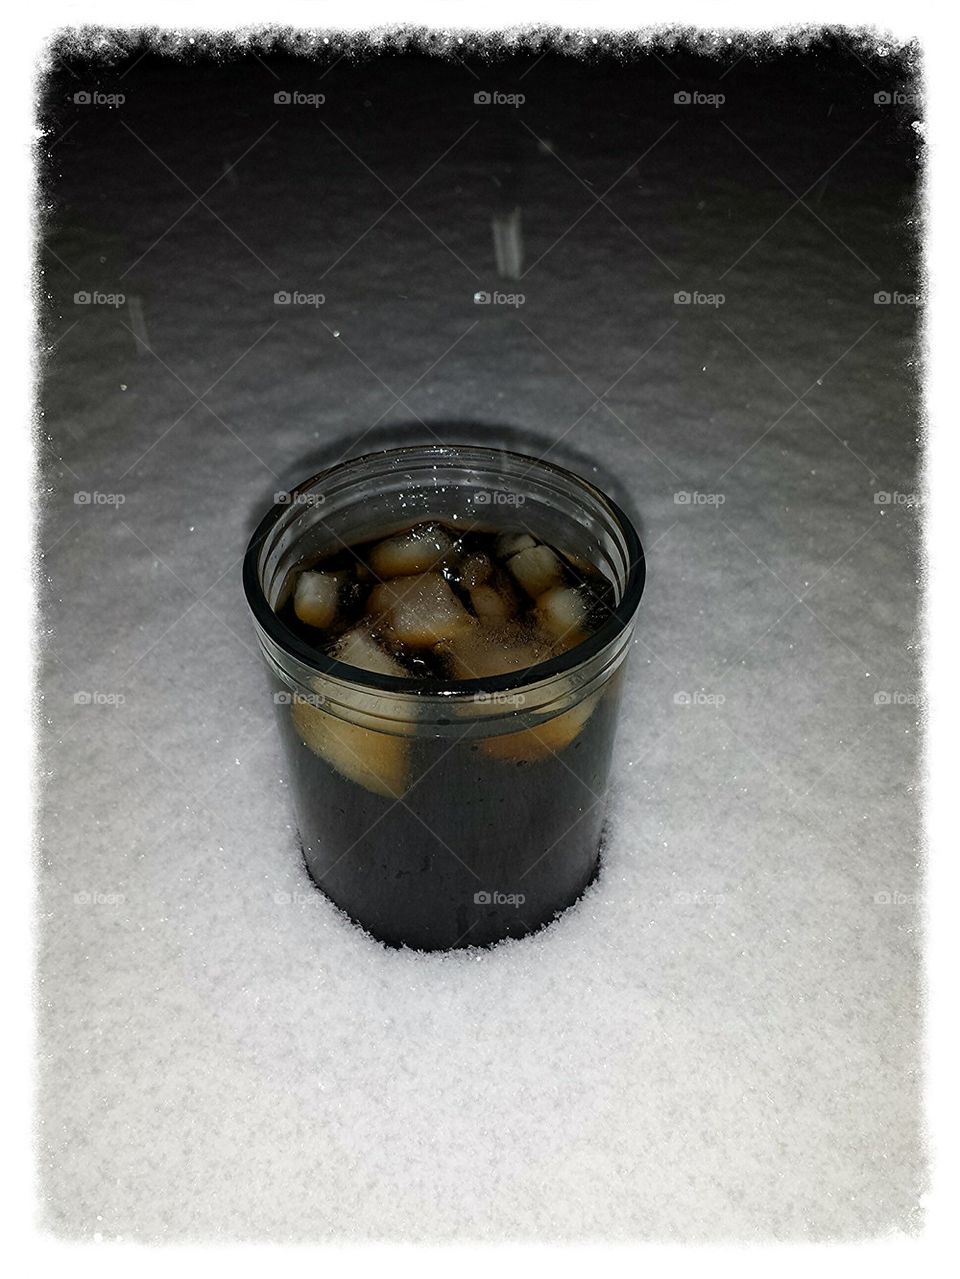 Snowcold Coke